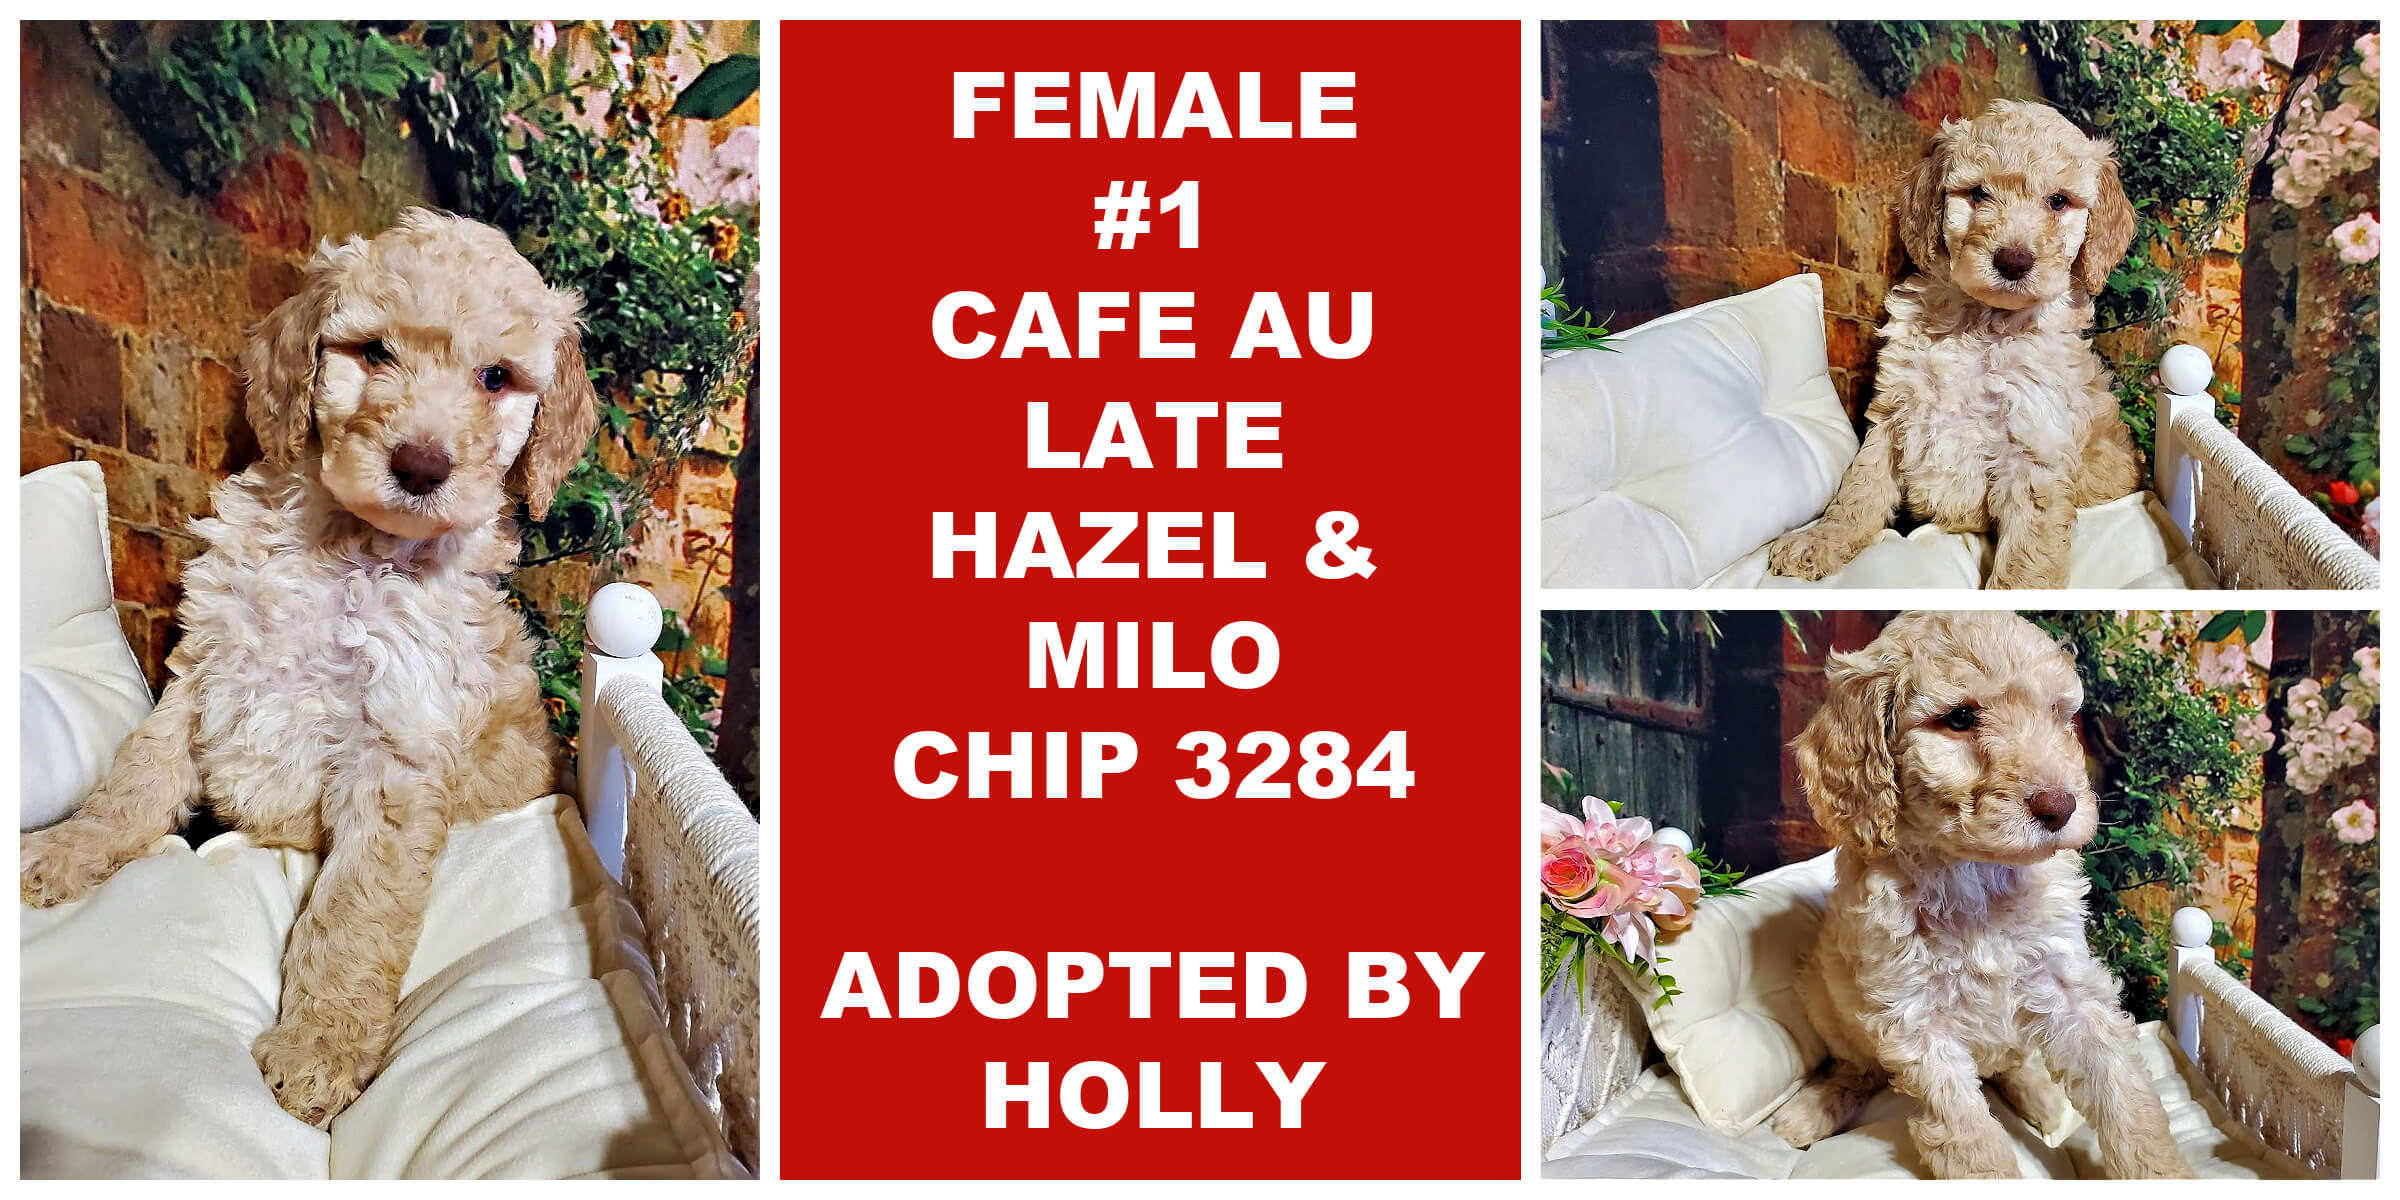 FEMALE # 1 CAFE AU LATE HAZEL & MILO CHIP 3284..